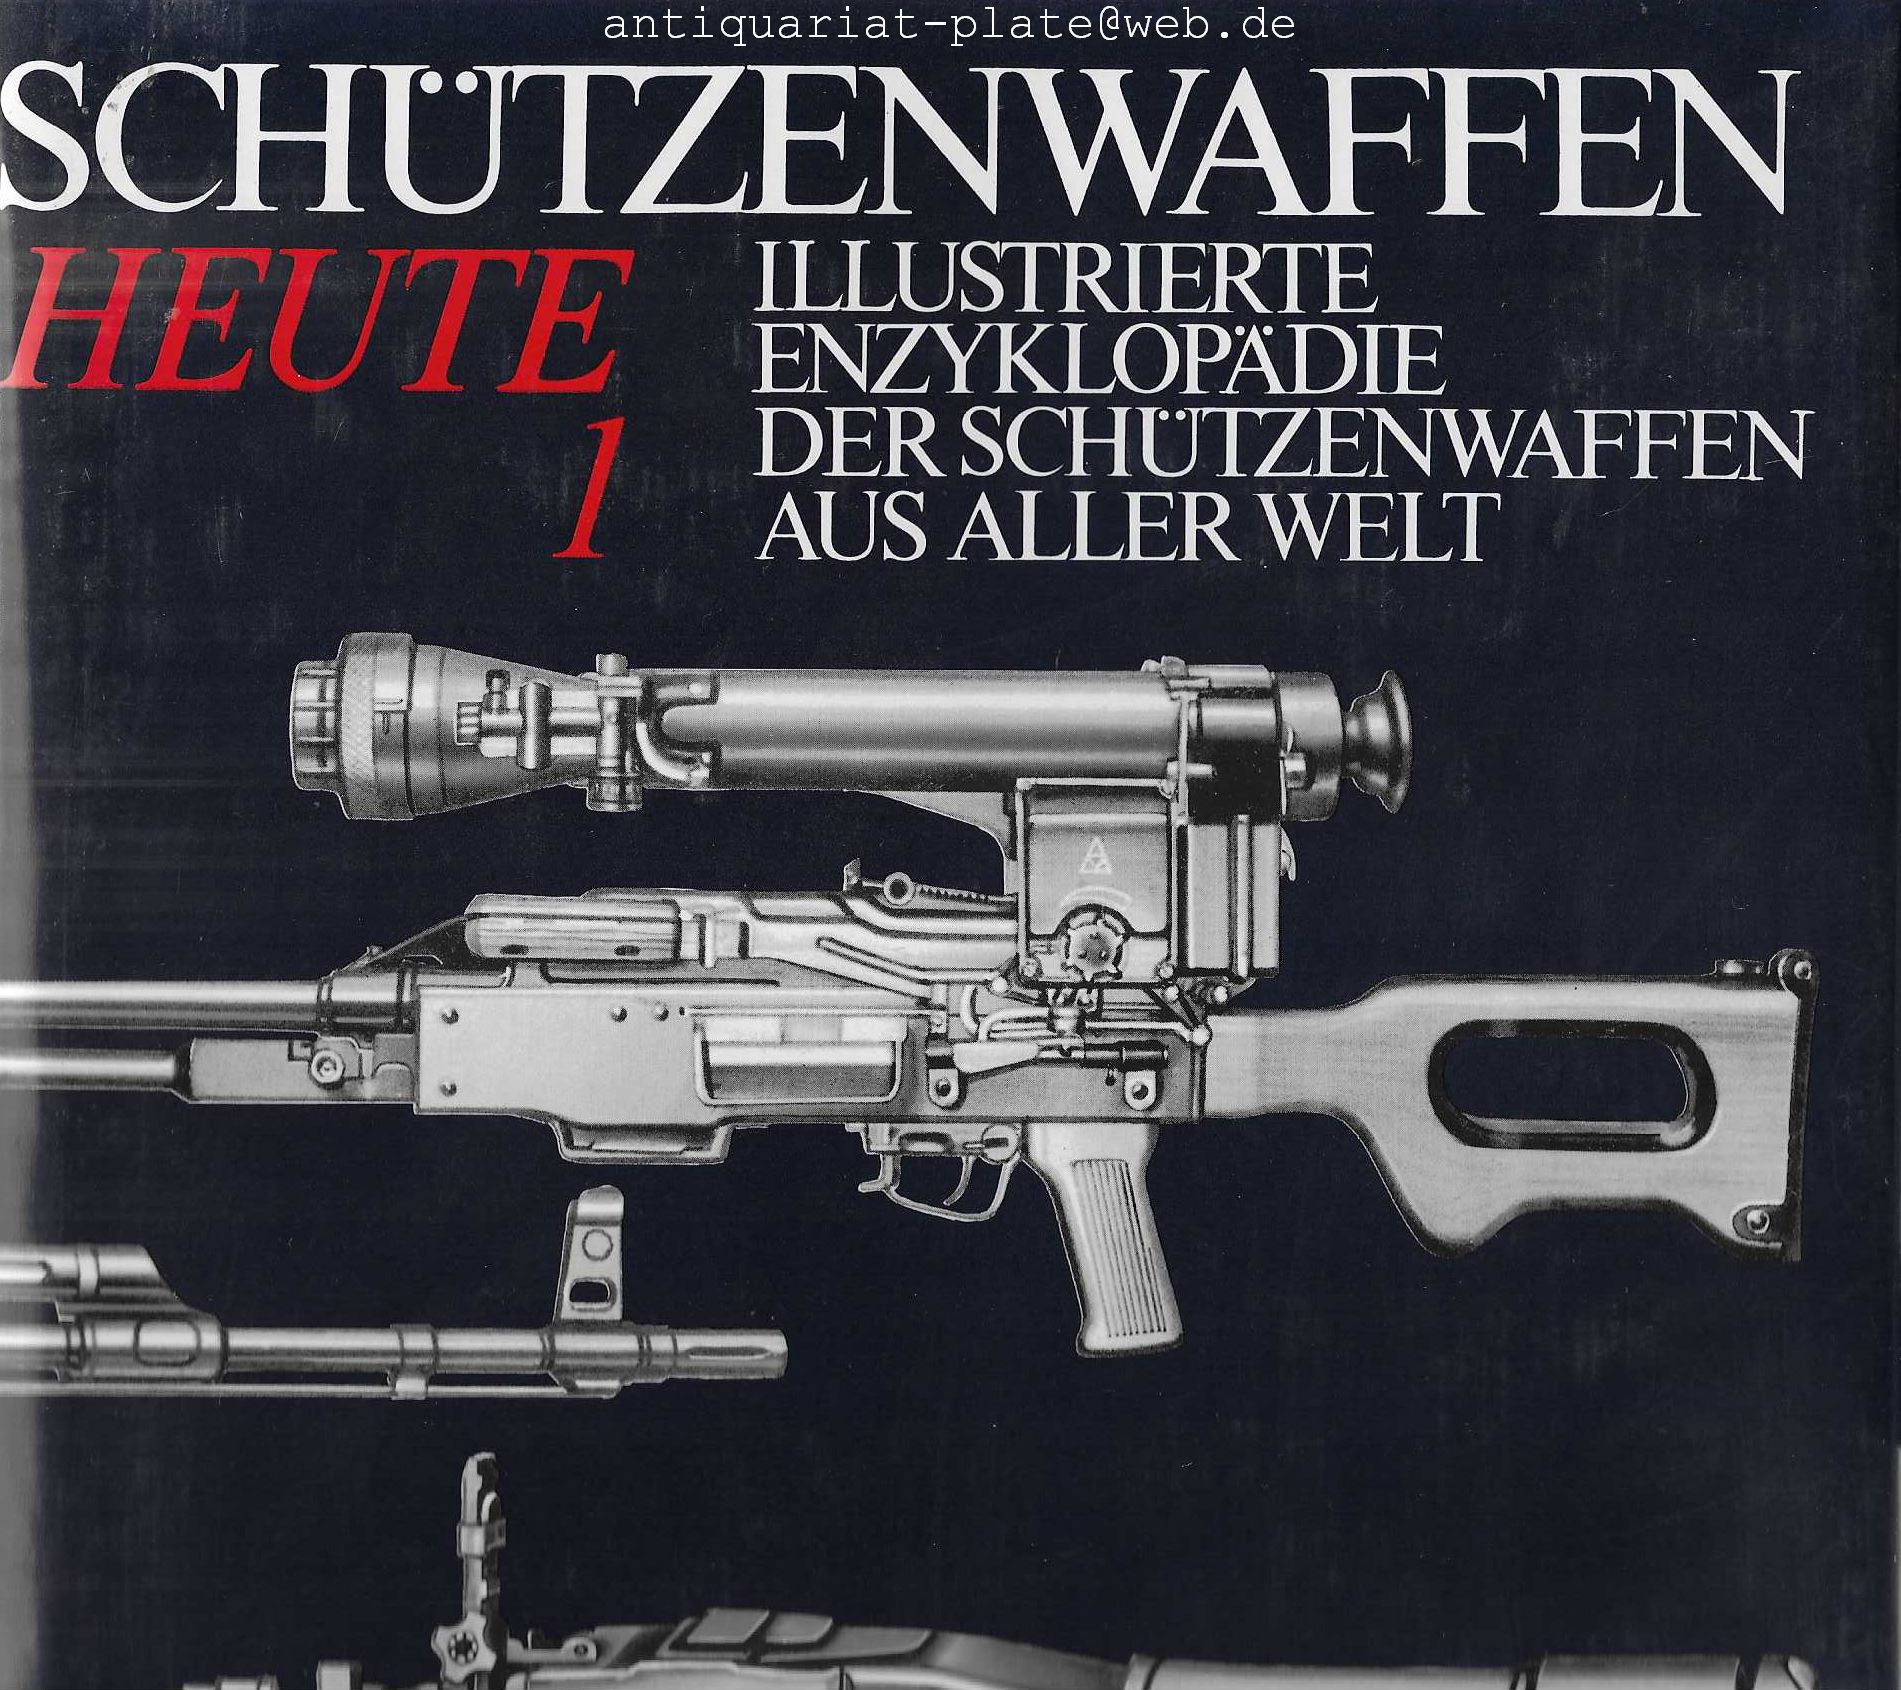 Schützenwaffen Heute (1945-1985) Band 1 und Band 2. Illustrierte Enzyklopädie der Schützenwaffen aus aller Welt. - Wollert, Günter, Reiner Lidschun und Wilfried Kopenhagen